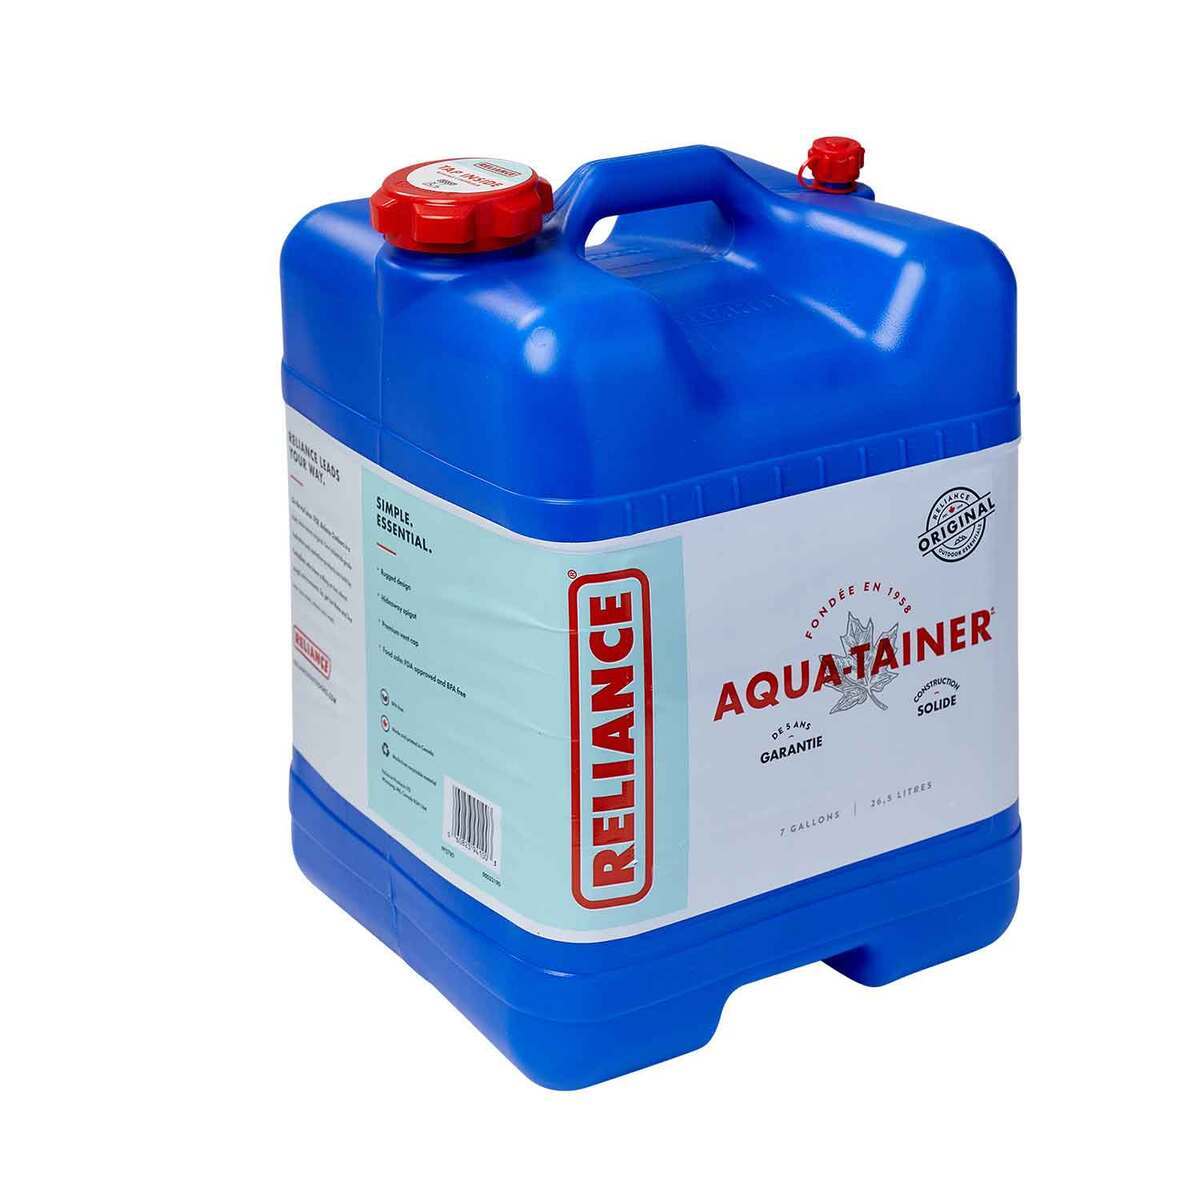 https://www.sportsmans.com/medias/reliance-aqua-tainer-7-gallon-water-container-100975-1.jpg?context=bWFzdGVyfGltYWdlc3w2NDUzNHxpbWFnZS9qcGVnfGg1NS9oZTEvMTExMjEyNDA4OTk2MTQvMTAwOTc1LTFfYmFzZS1jb252ZXJzaW9uRm9ybWF0XzEyMDAtY29udmVyc2lvbkZvcm1hdHxlZTZjY2Y1NGQwMmI0OWUwY2EwNGU5ZGRlMTBmYzQwYzI1N2M0NTI4Y2ZjNDJmNDM2OTg4MDhiY2RiNDViZDdl